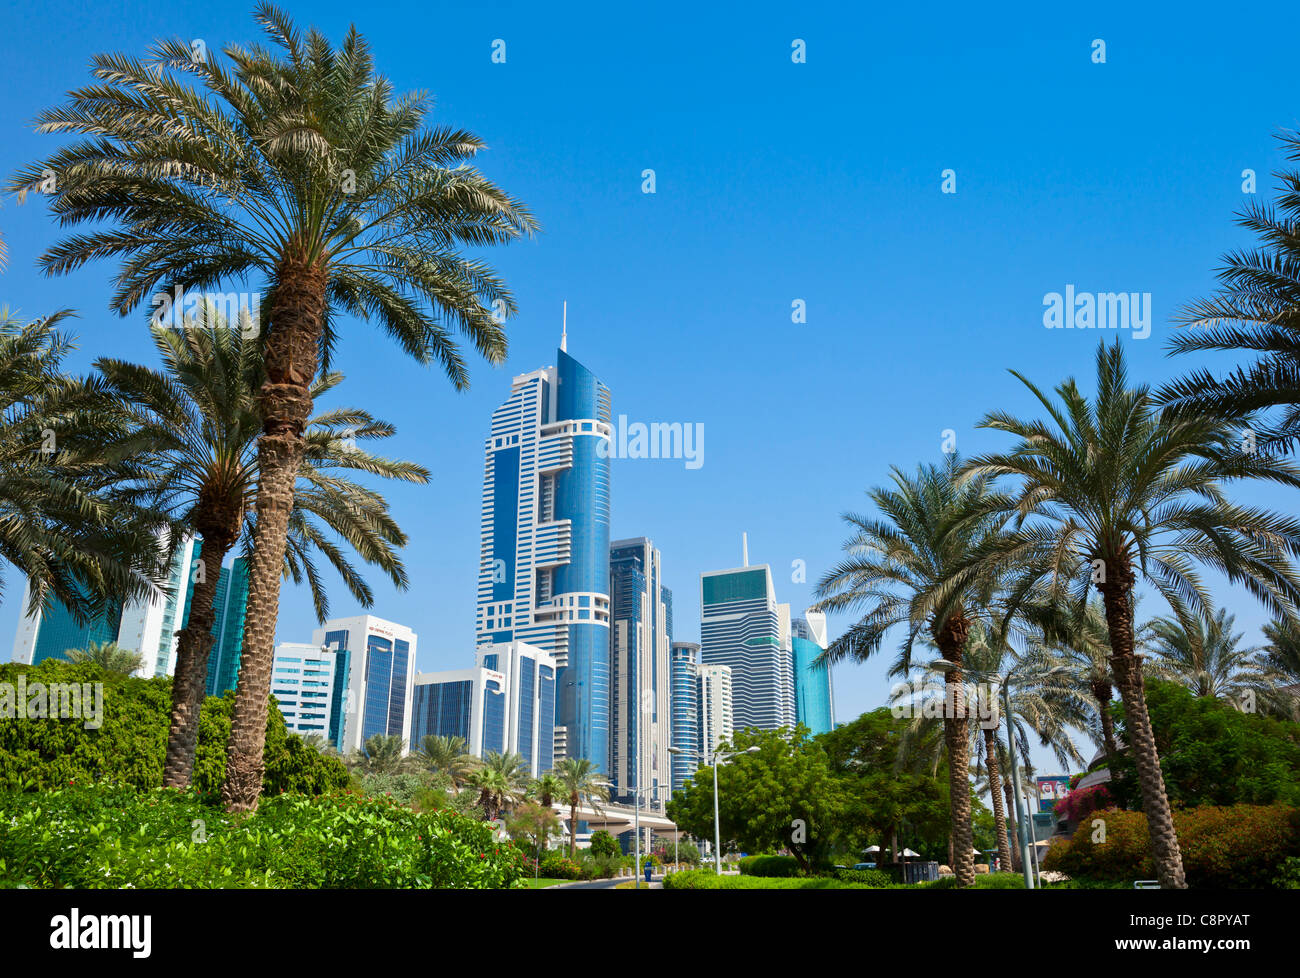 Skyline von Downtown Hochhaus Wolkenkratzer mit Palmen Bäume Dubai City, Vereinigte Arabische Emirate, Vereinigte Arabische Emirate, Naher Osten Stockfoto